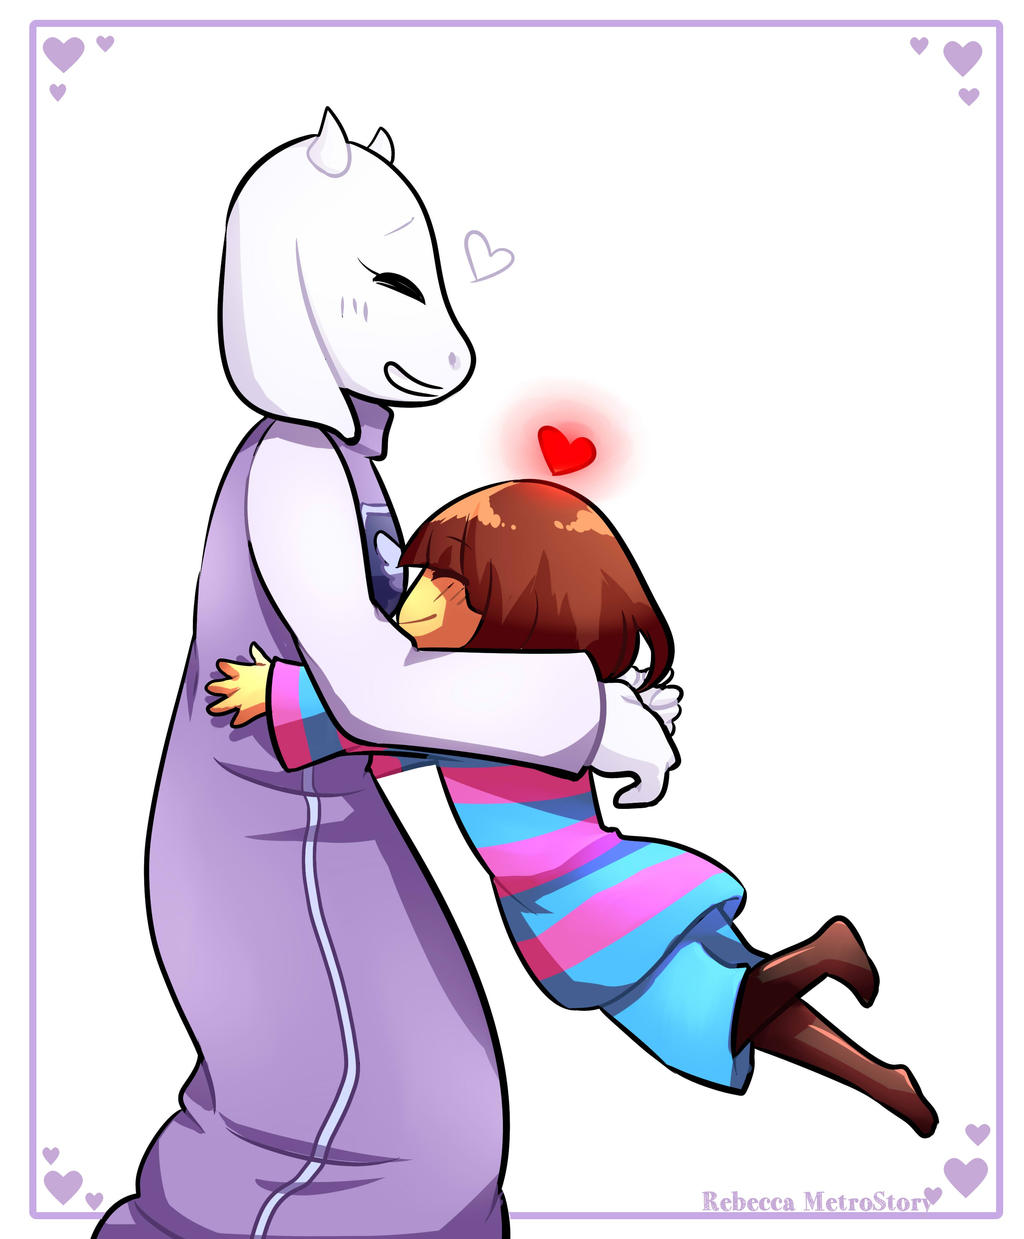 [Undertale] Hugging Toriel by RebeccaMetroStory on DeviantArt